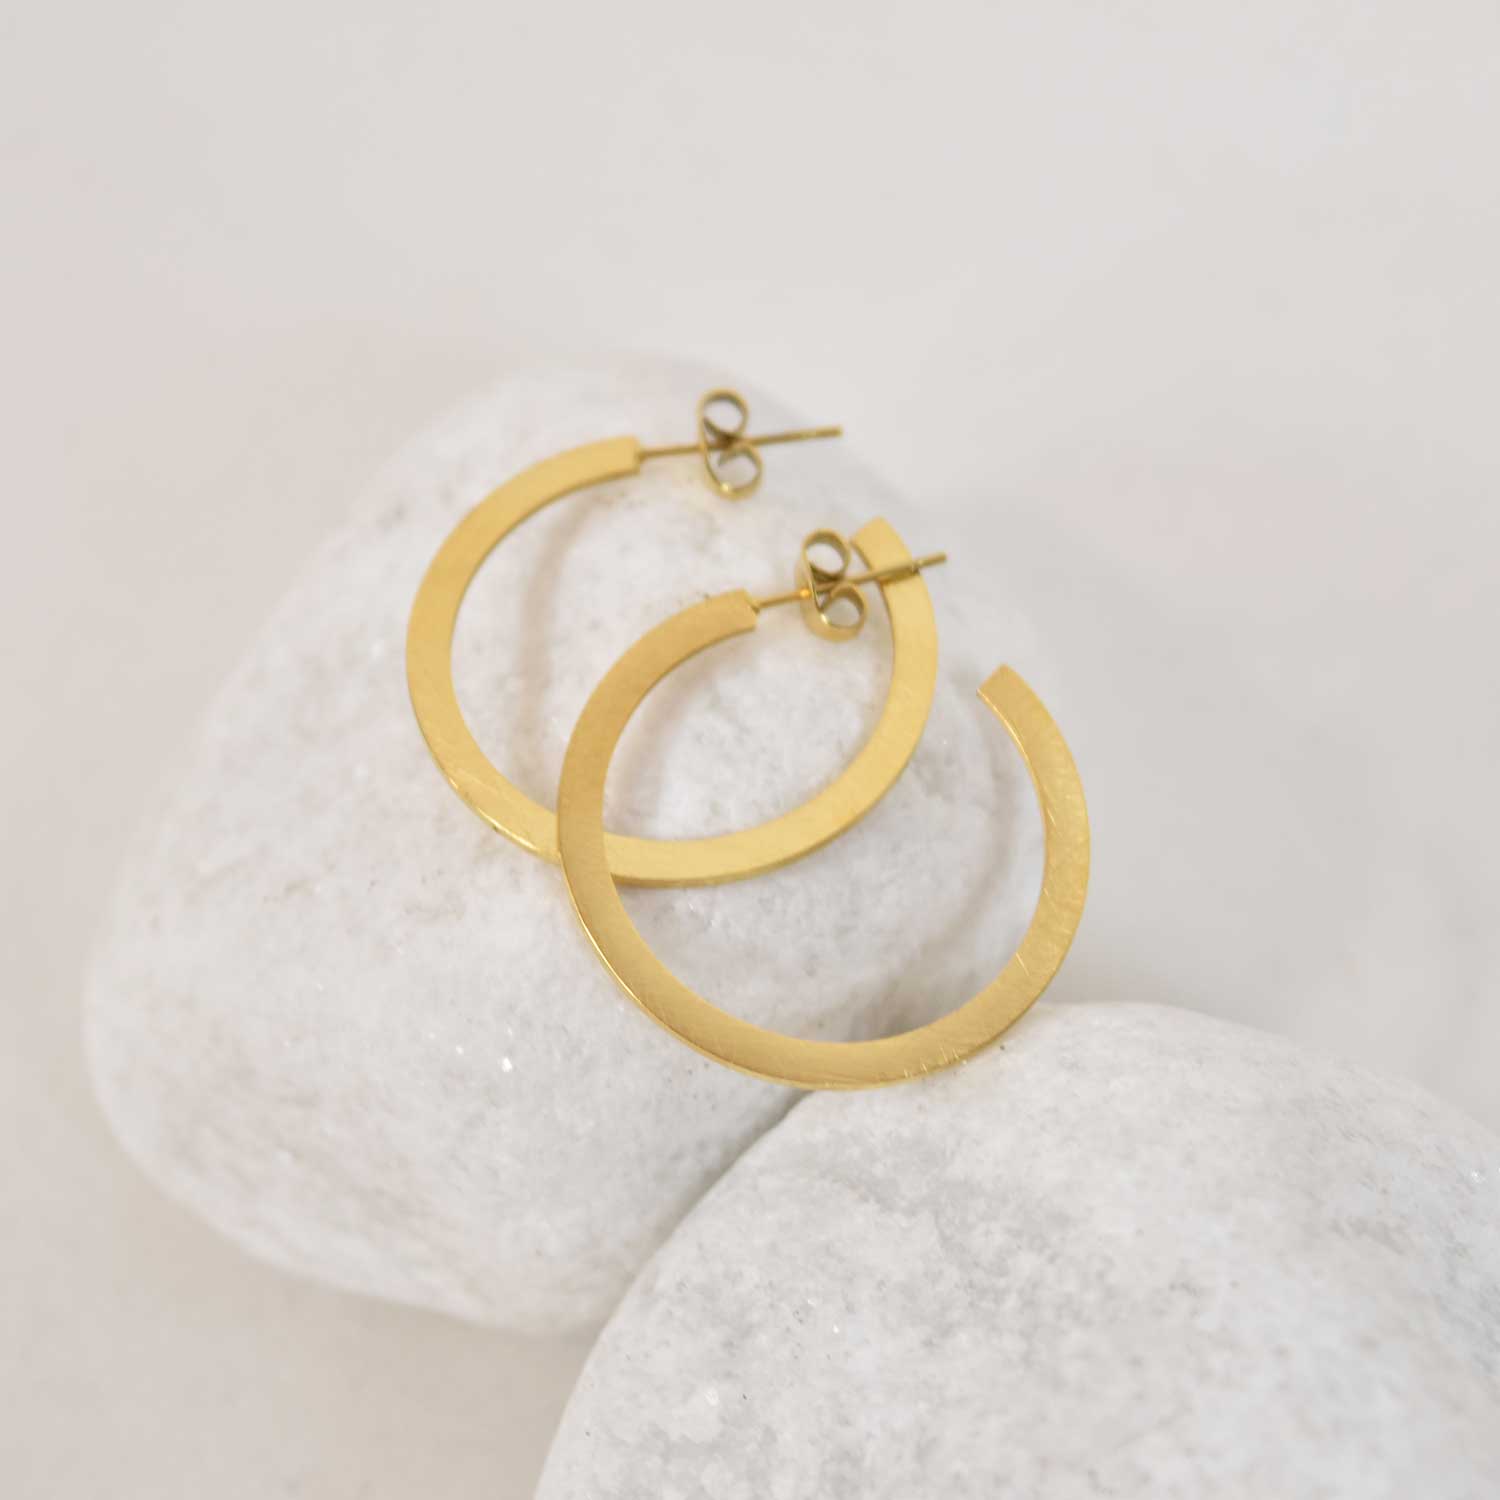 Golden flat hoop earrings